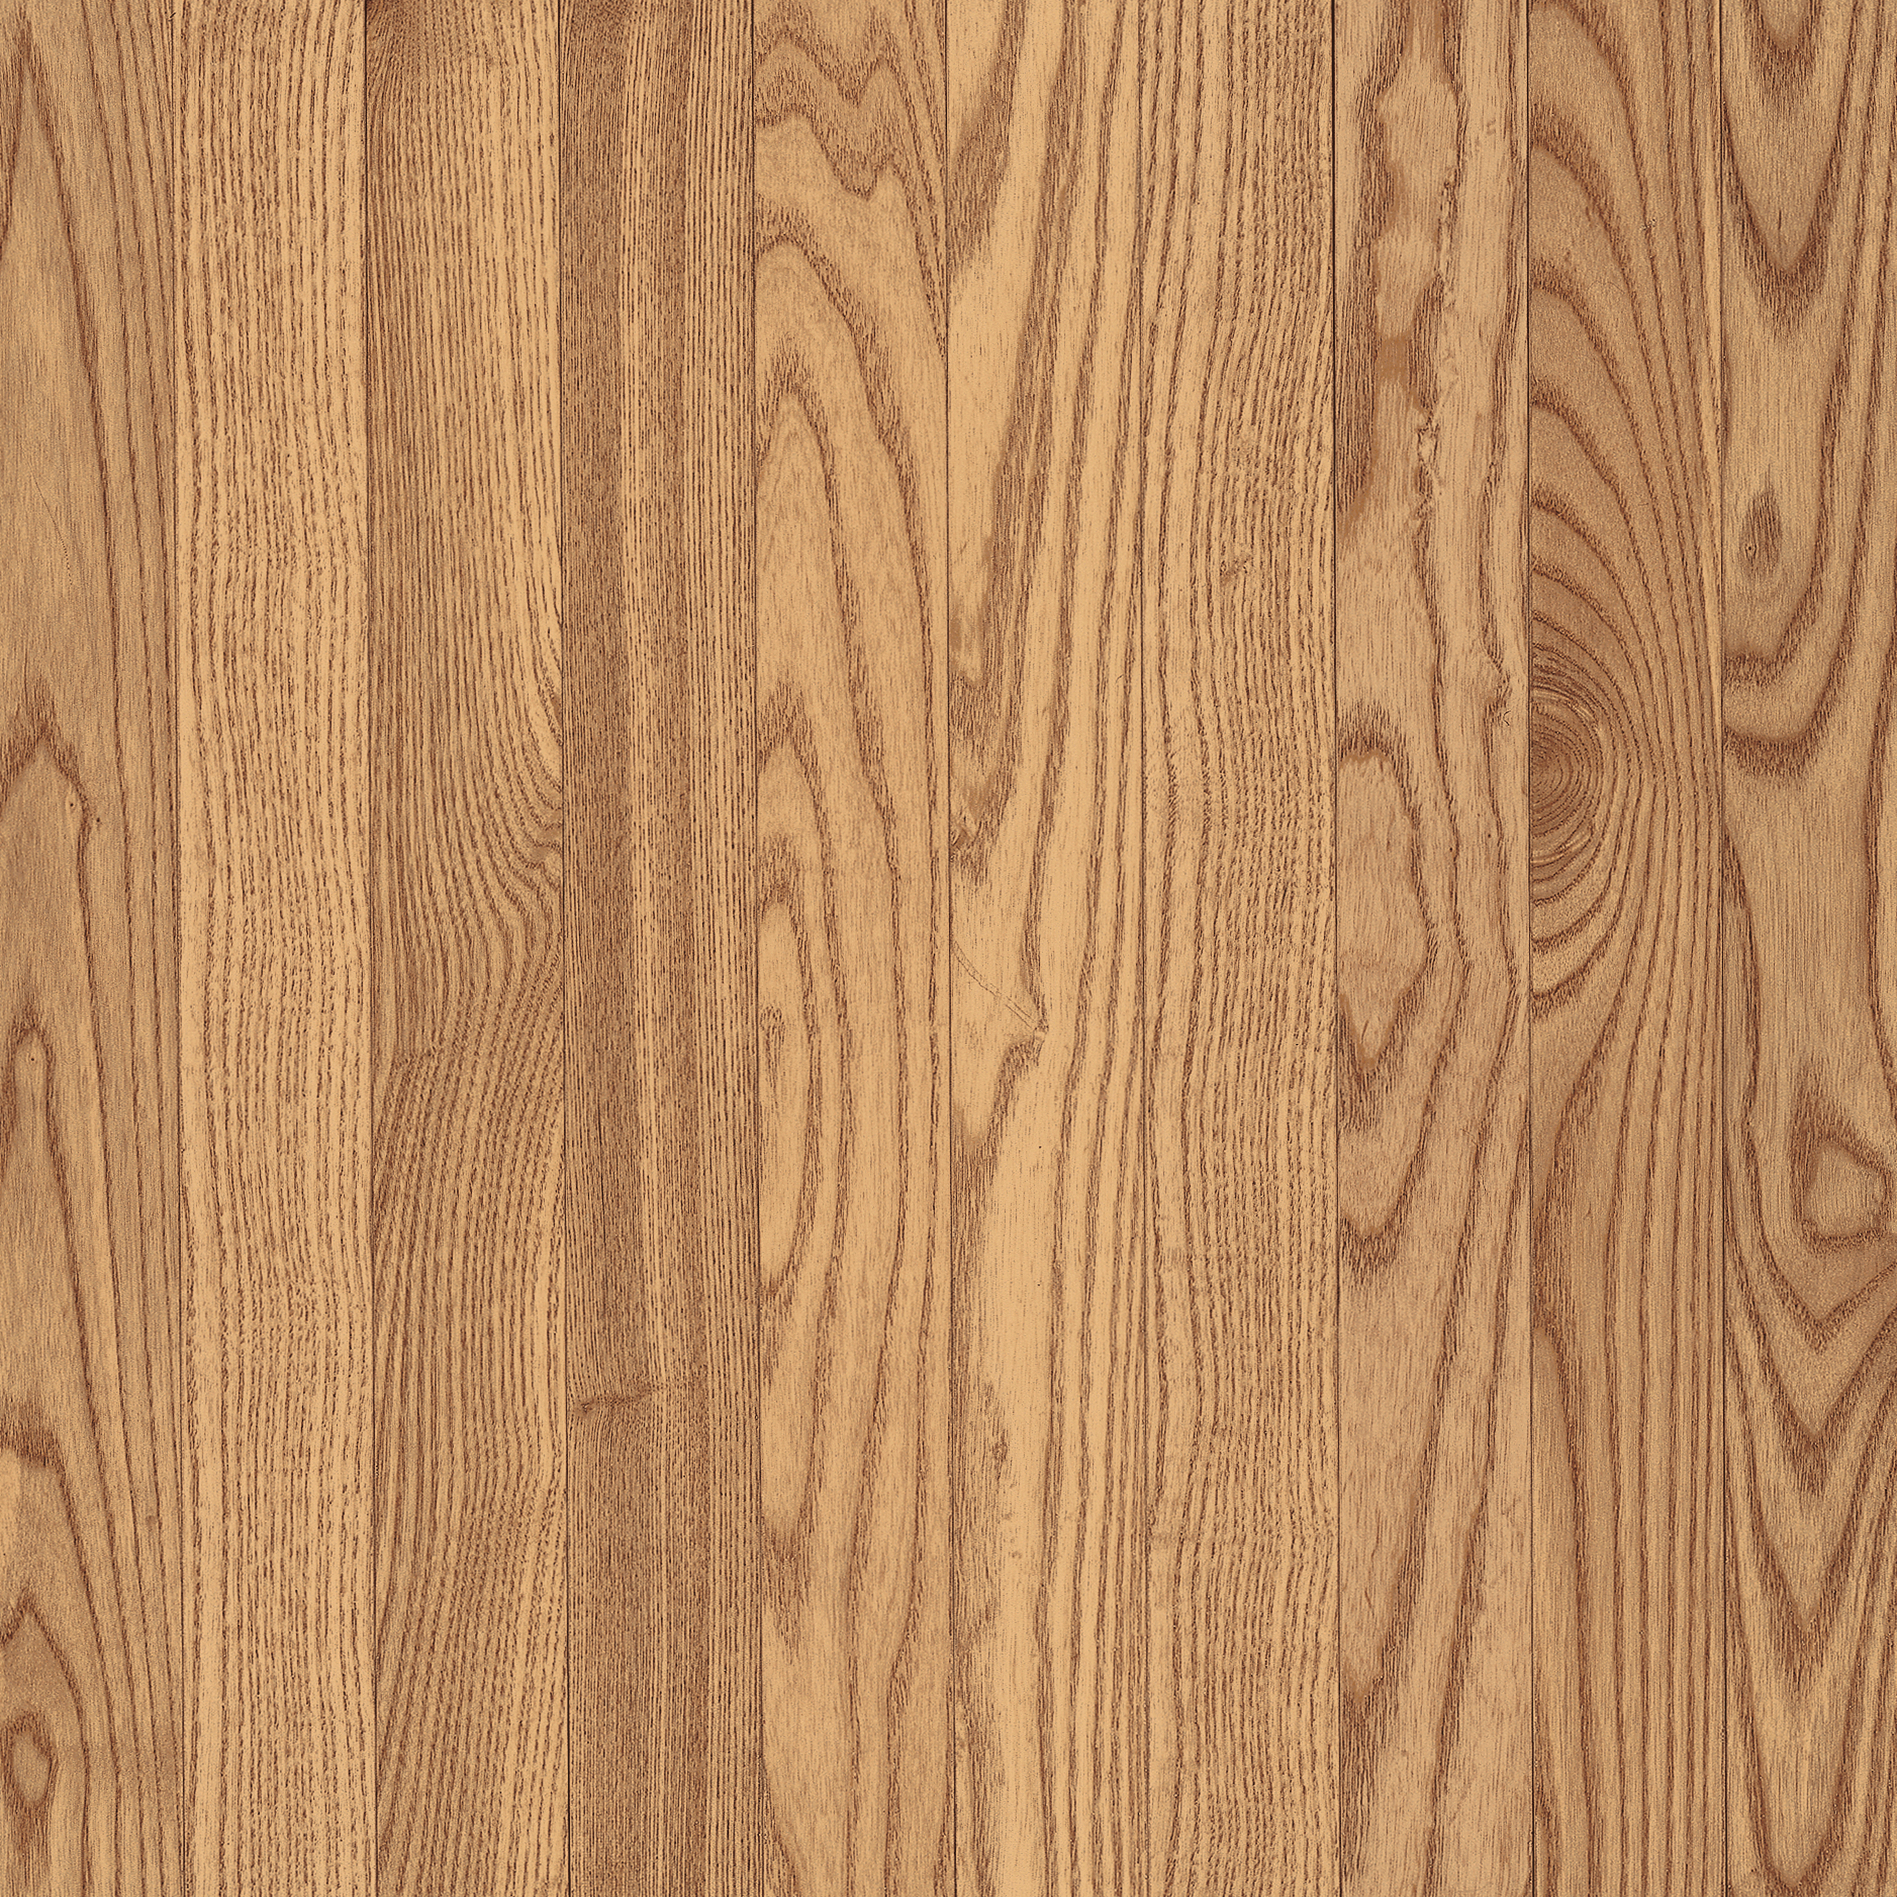 Oak Hardwood flooring in Rockville from Alladin Carpet and Floors